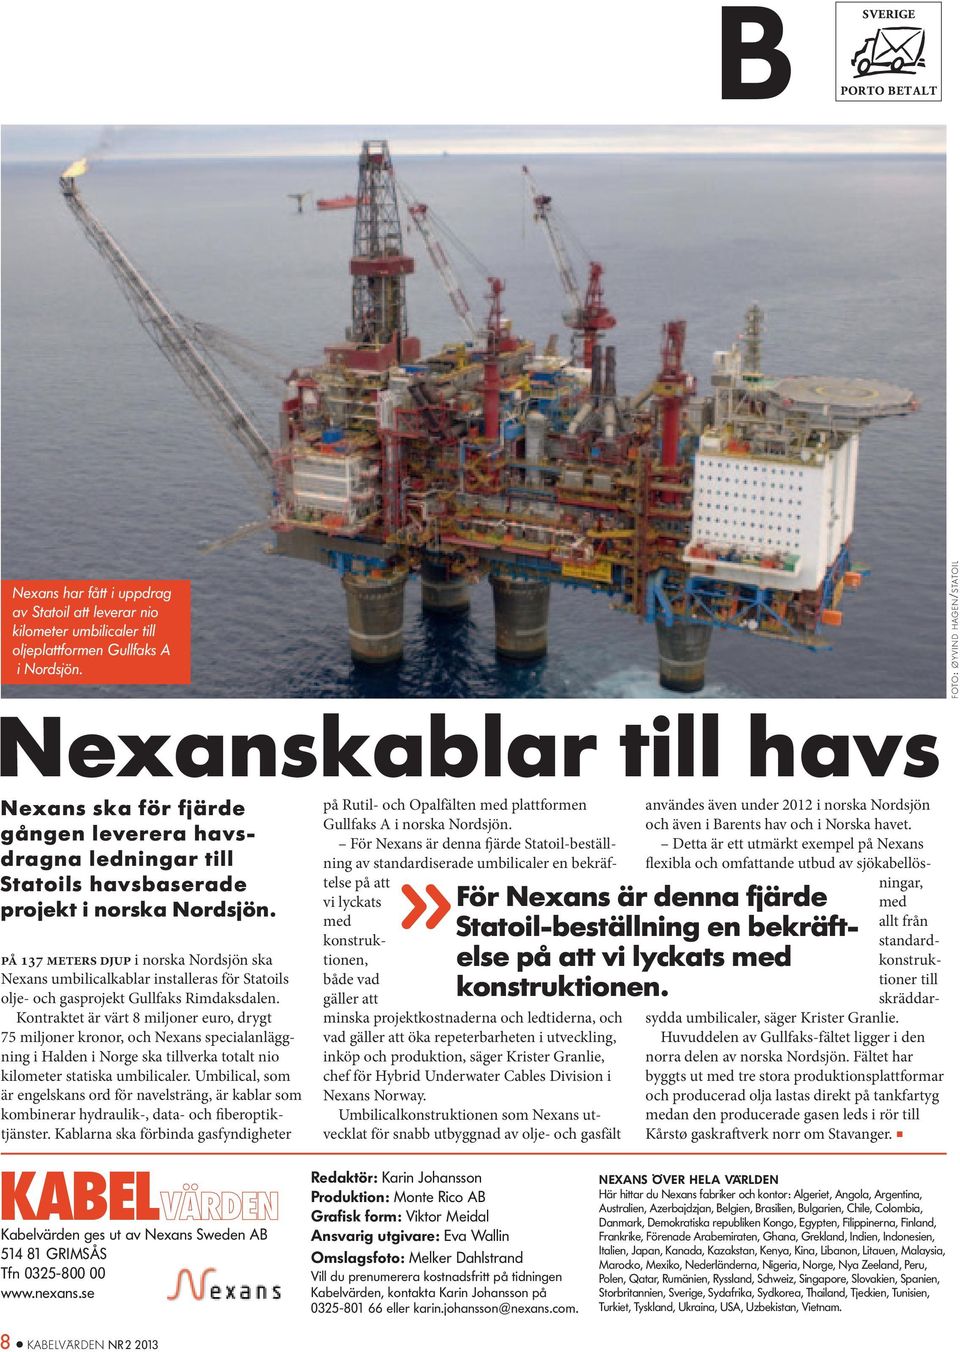 på 137 meters djup i norska Nordsjön ska Nexans umbilicalkablar installeras för Statoils olje- och gasprojekt Gullfaks Rimdaksdalen.